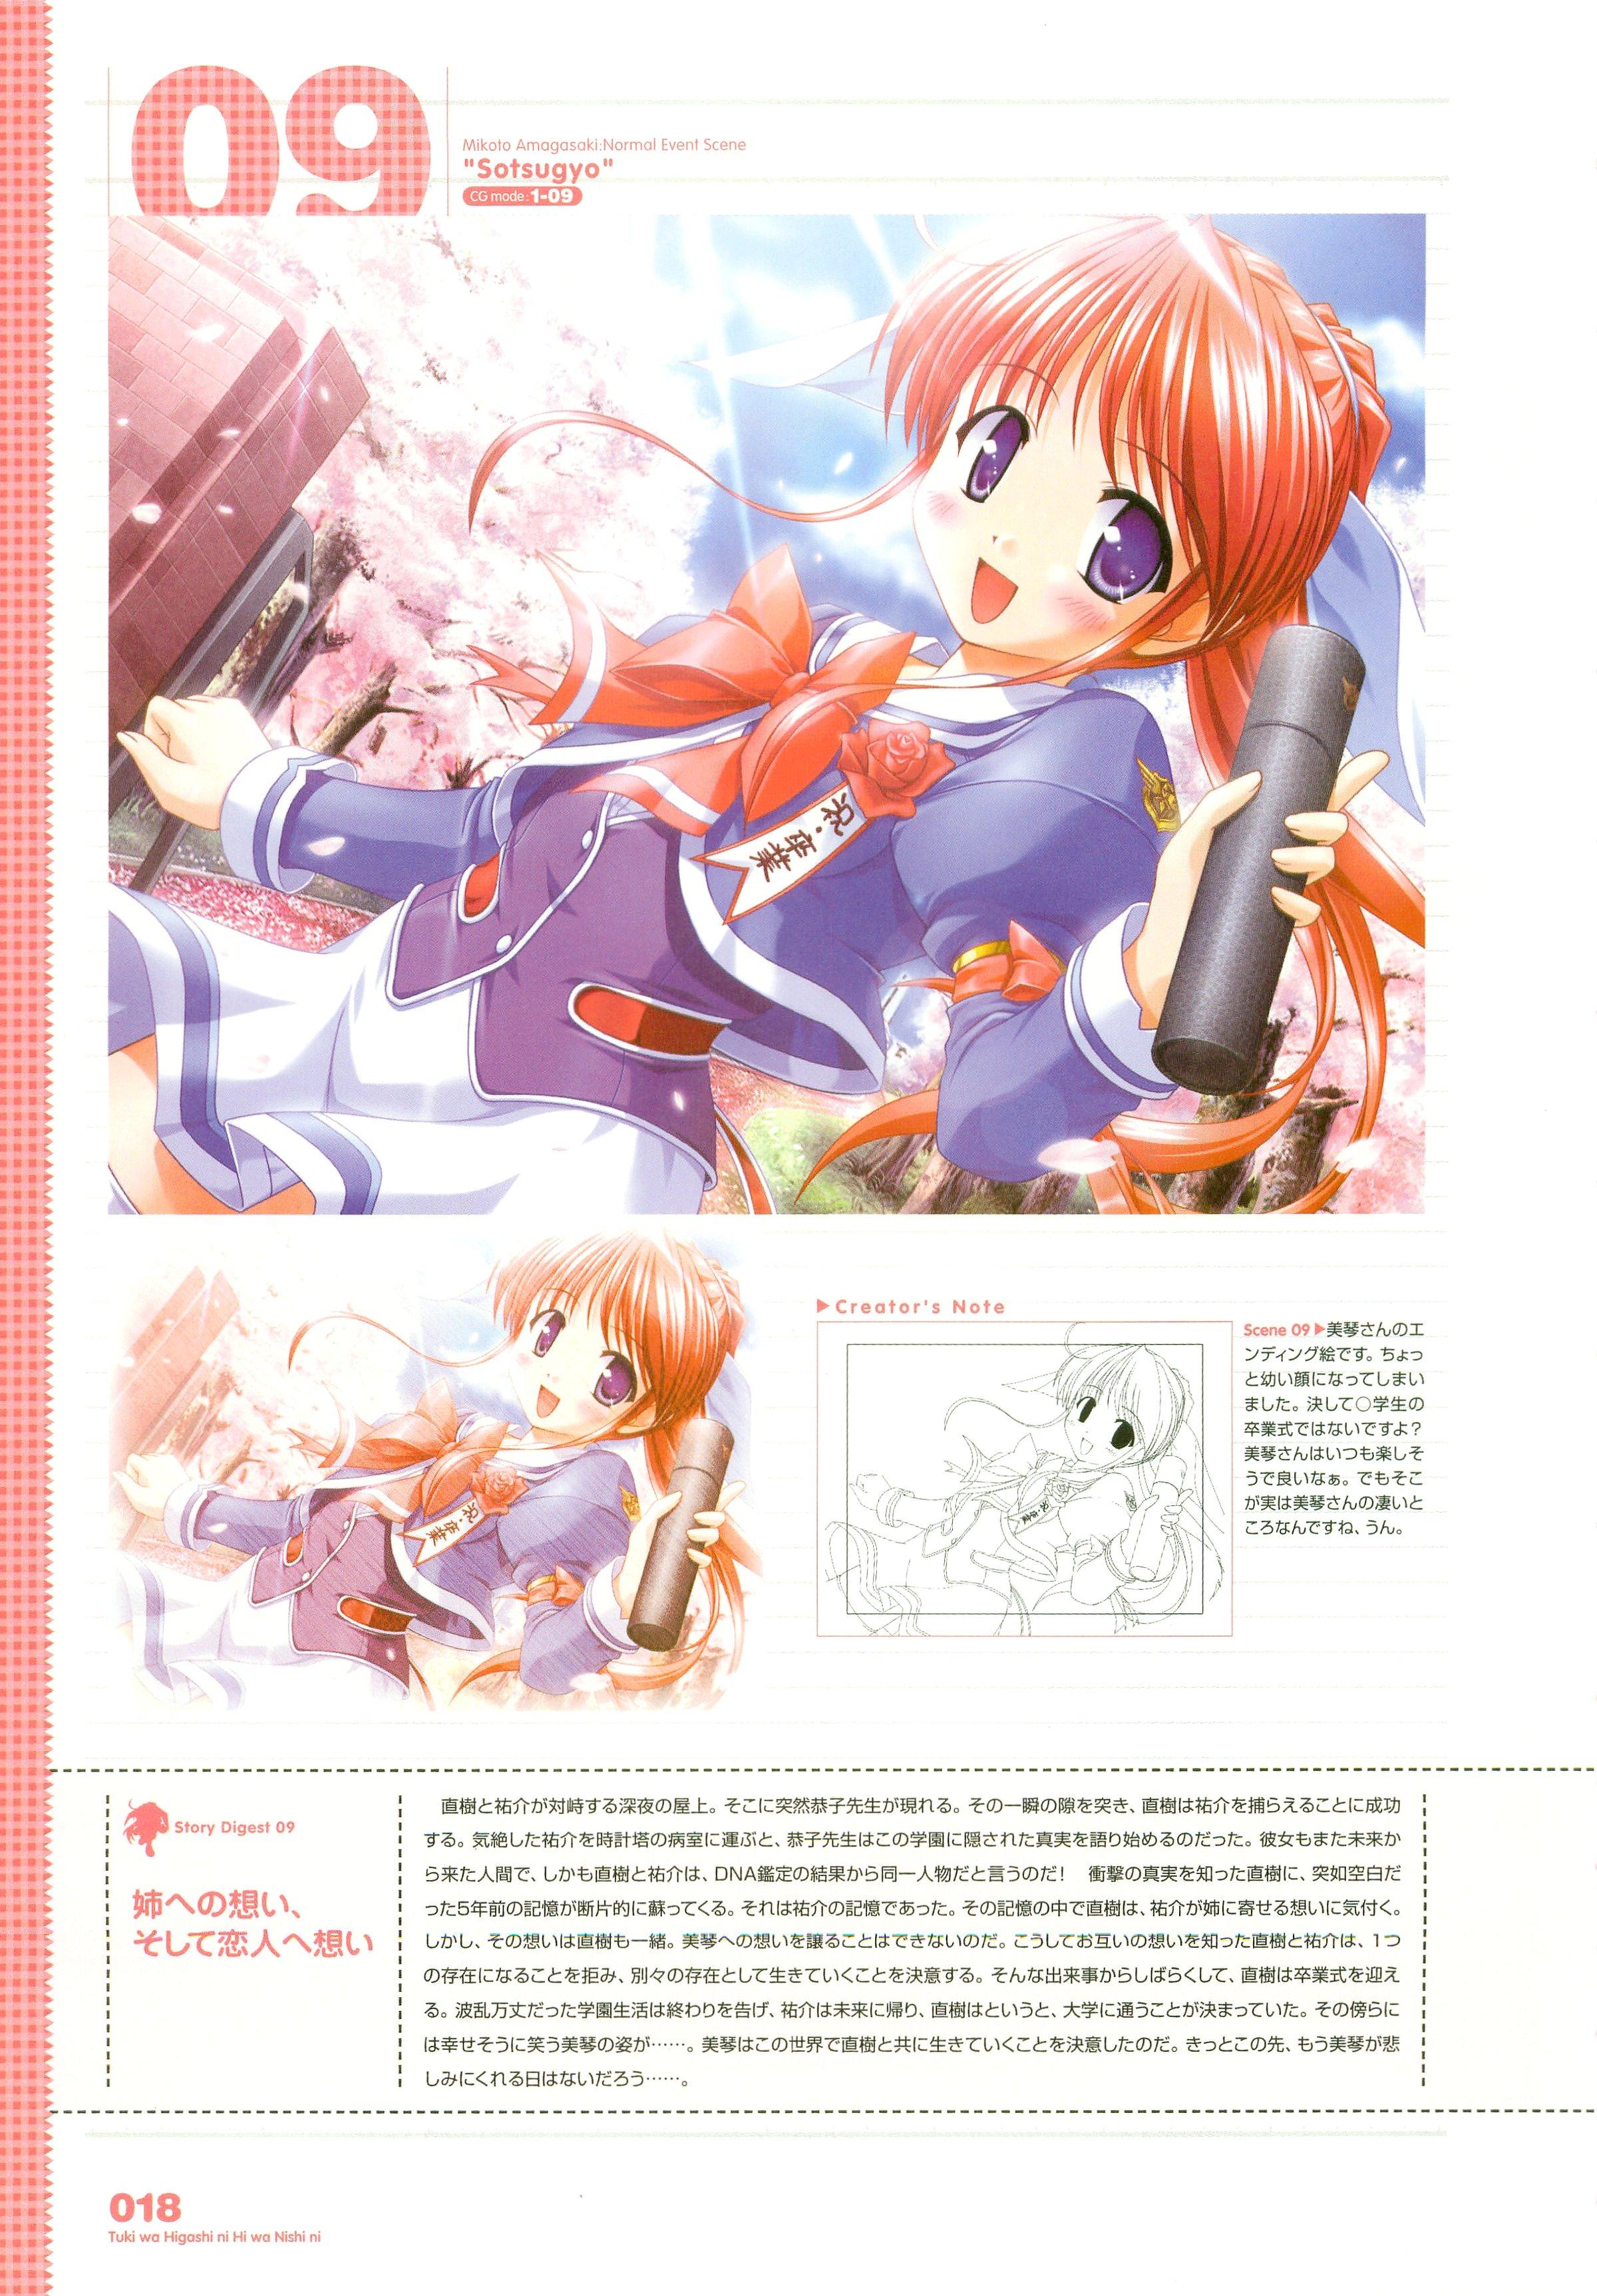 Tsuki wa Higashi ni Hi wa Nishi ni ～ Operation Sanctuary ～ Visual Fan Book 27